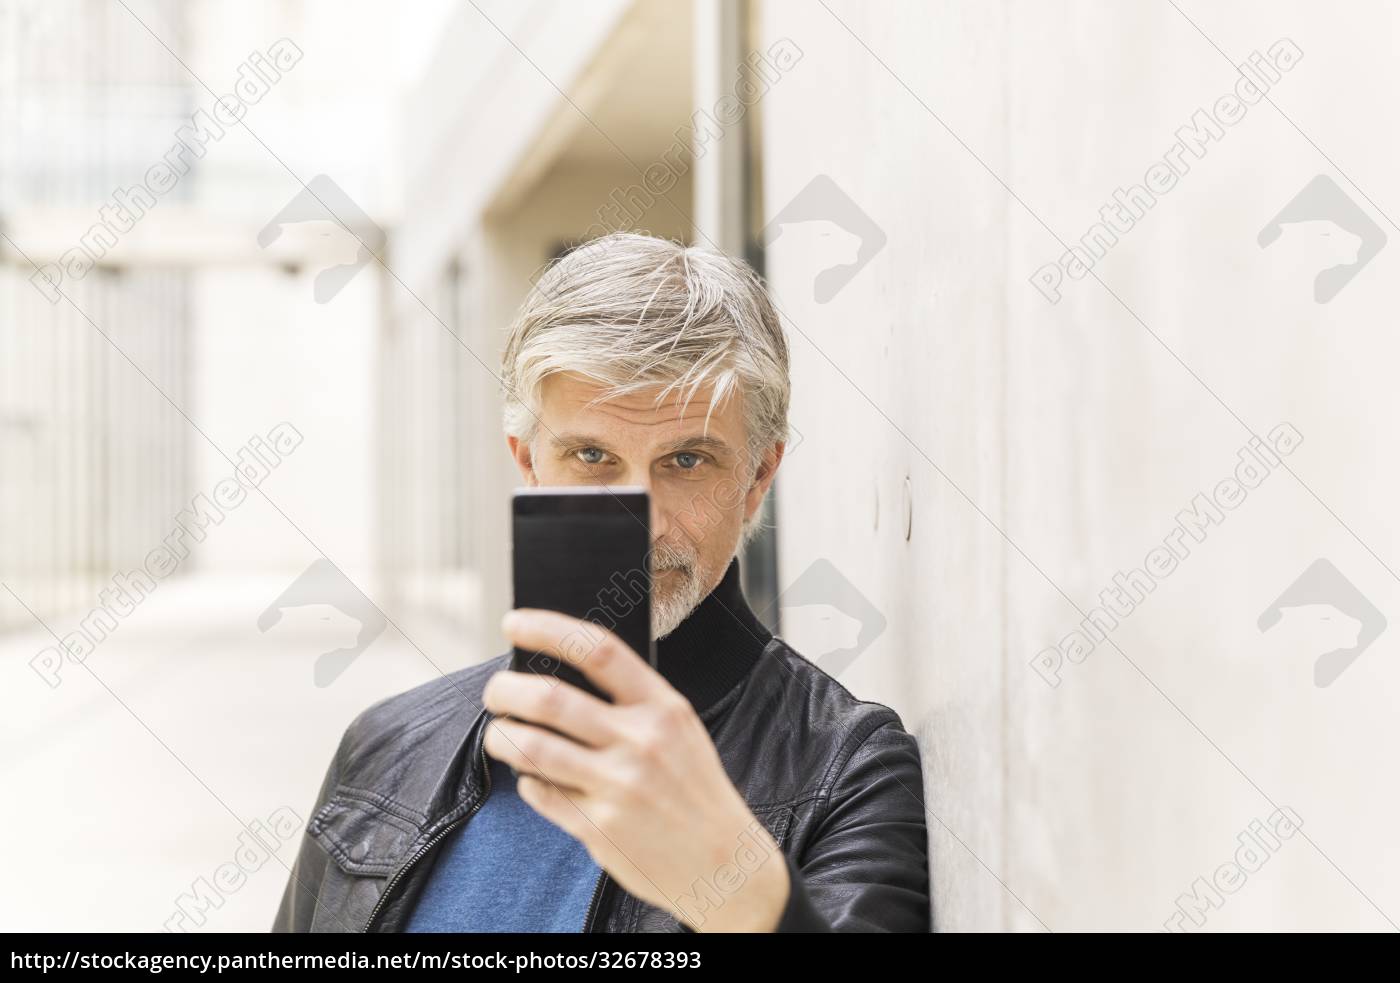 Reifer Mann Der Selfies Mit Seinem Smartphone Macht Lizenzfreies Bild 32678393 Bildagentur